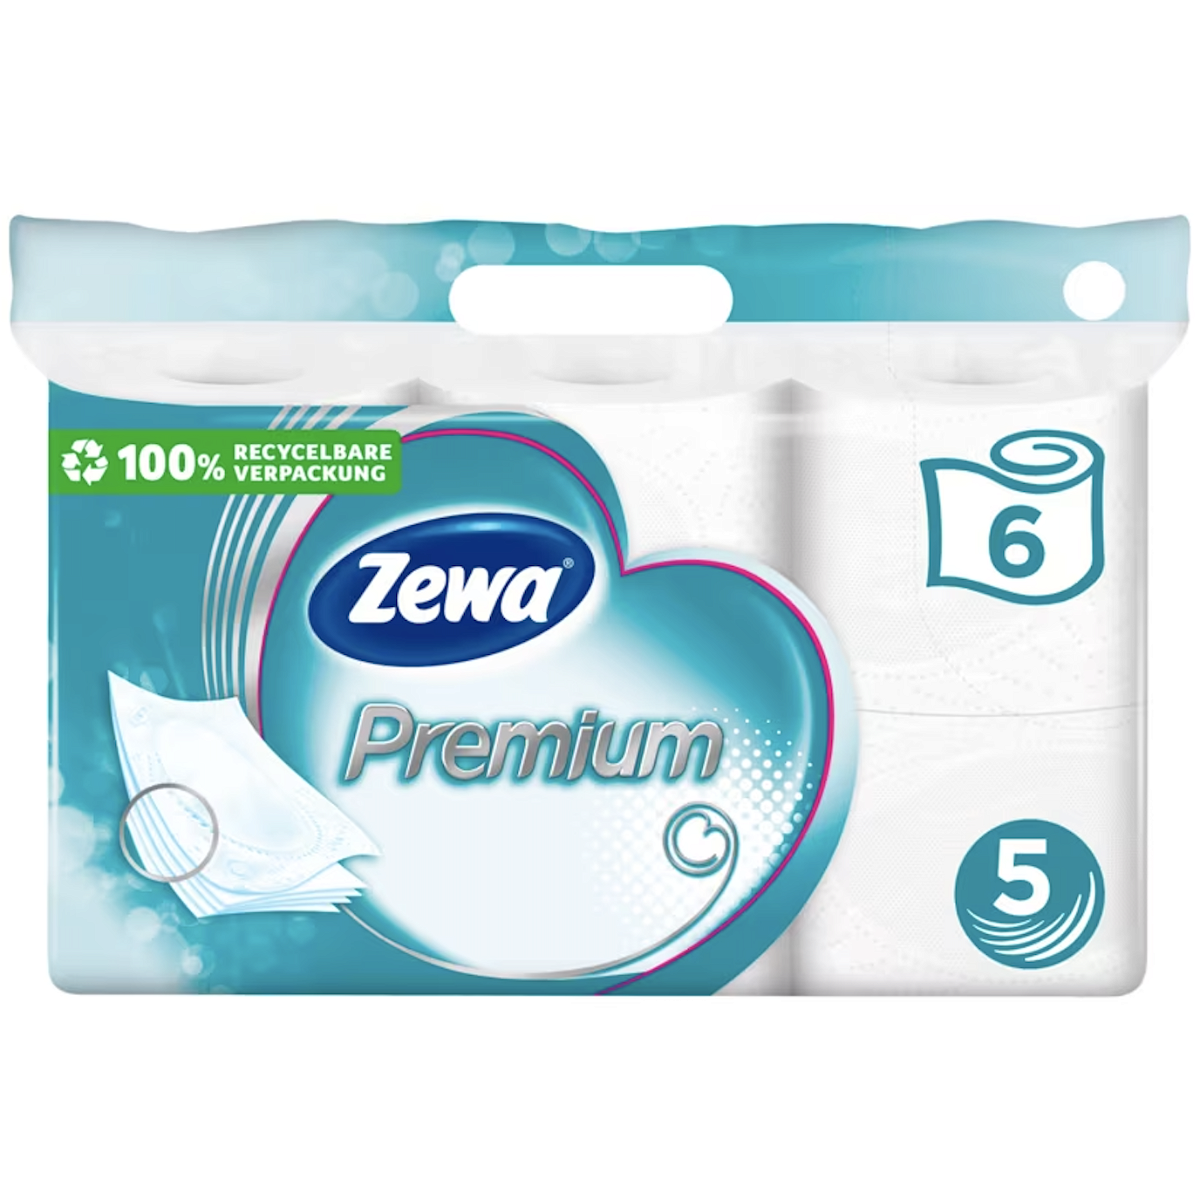 ZEWA Toilettenpapier Premium, 5-lagig